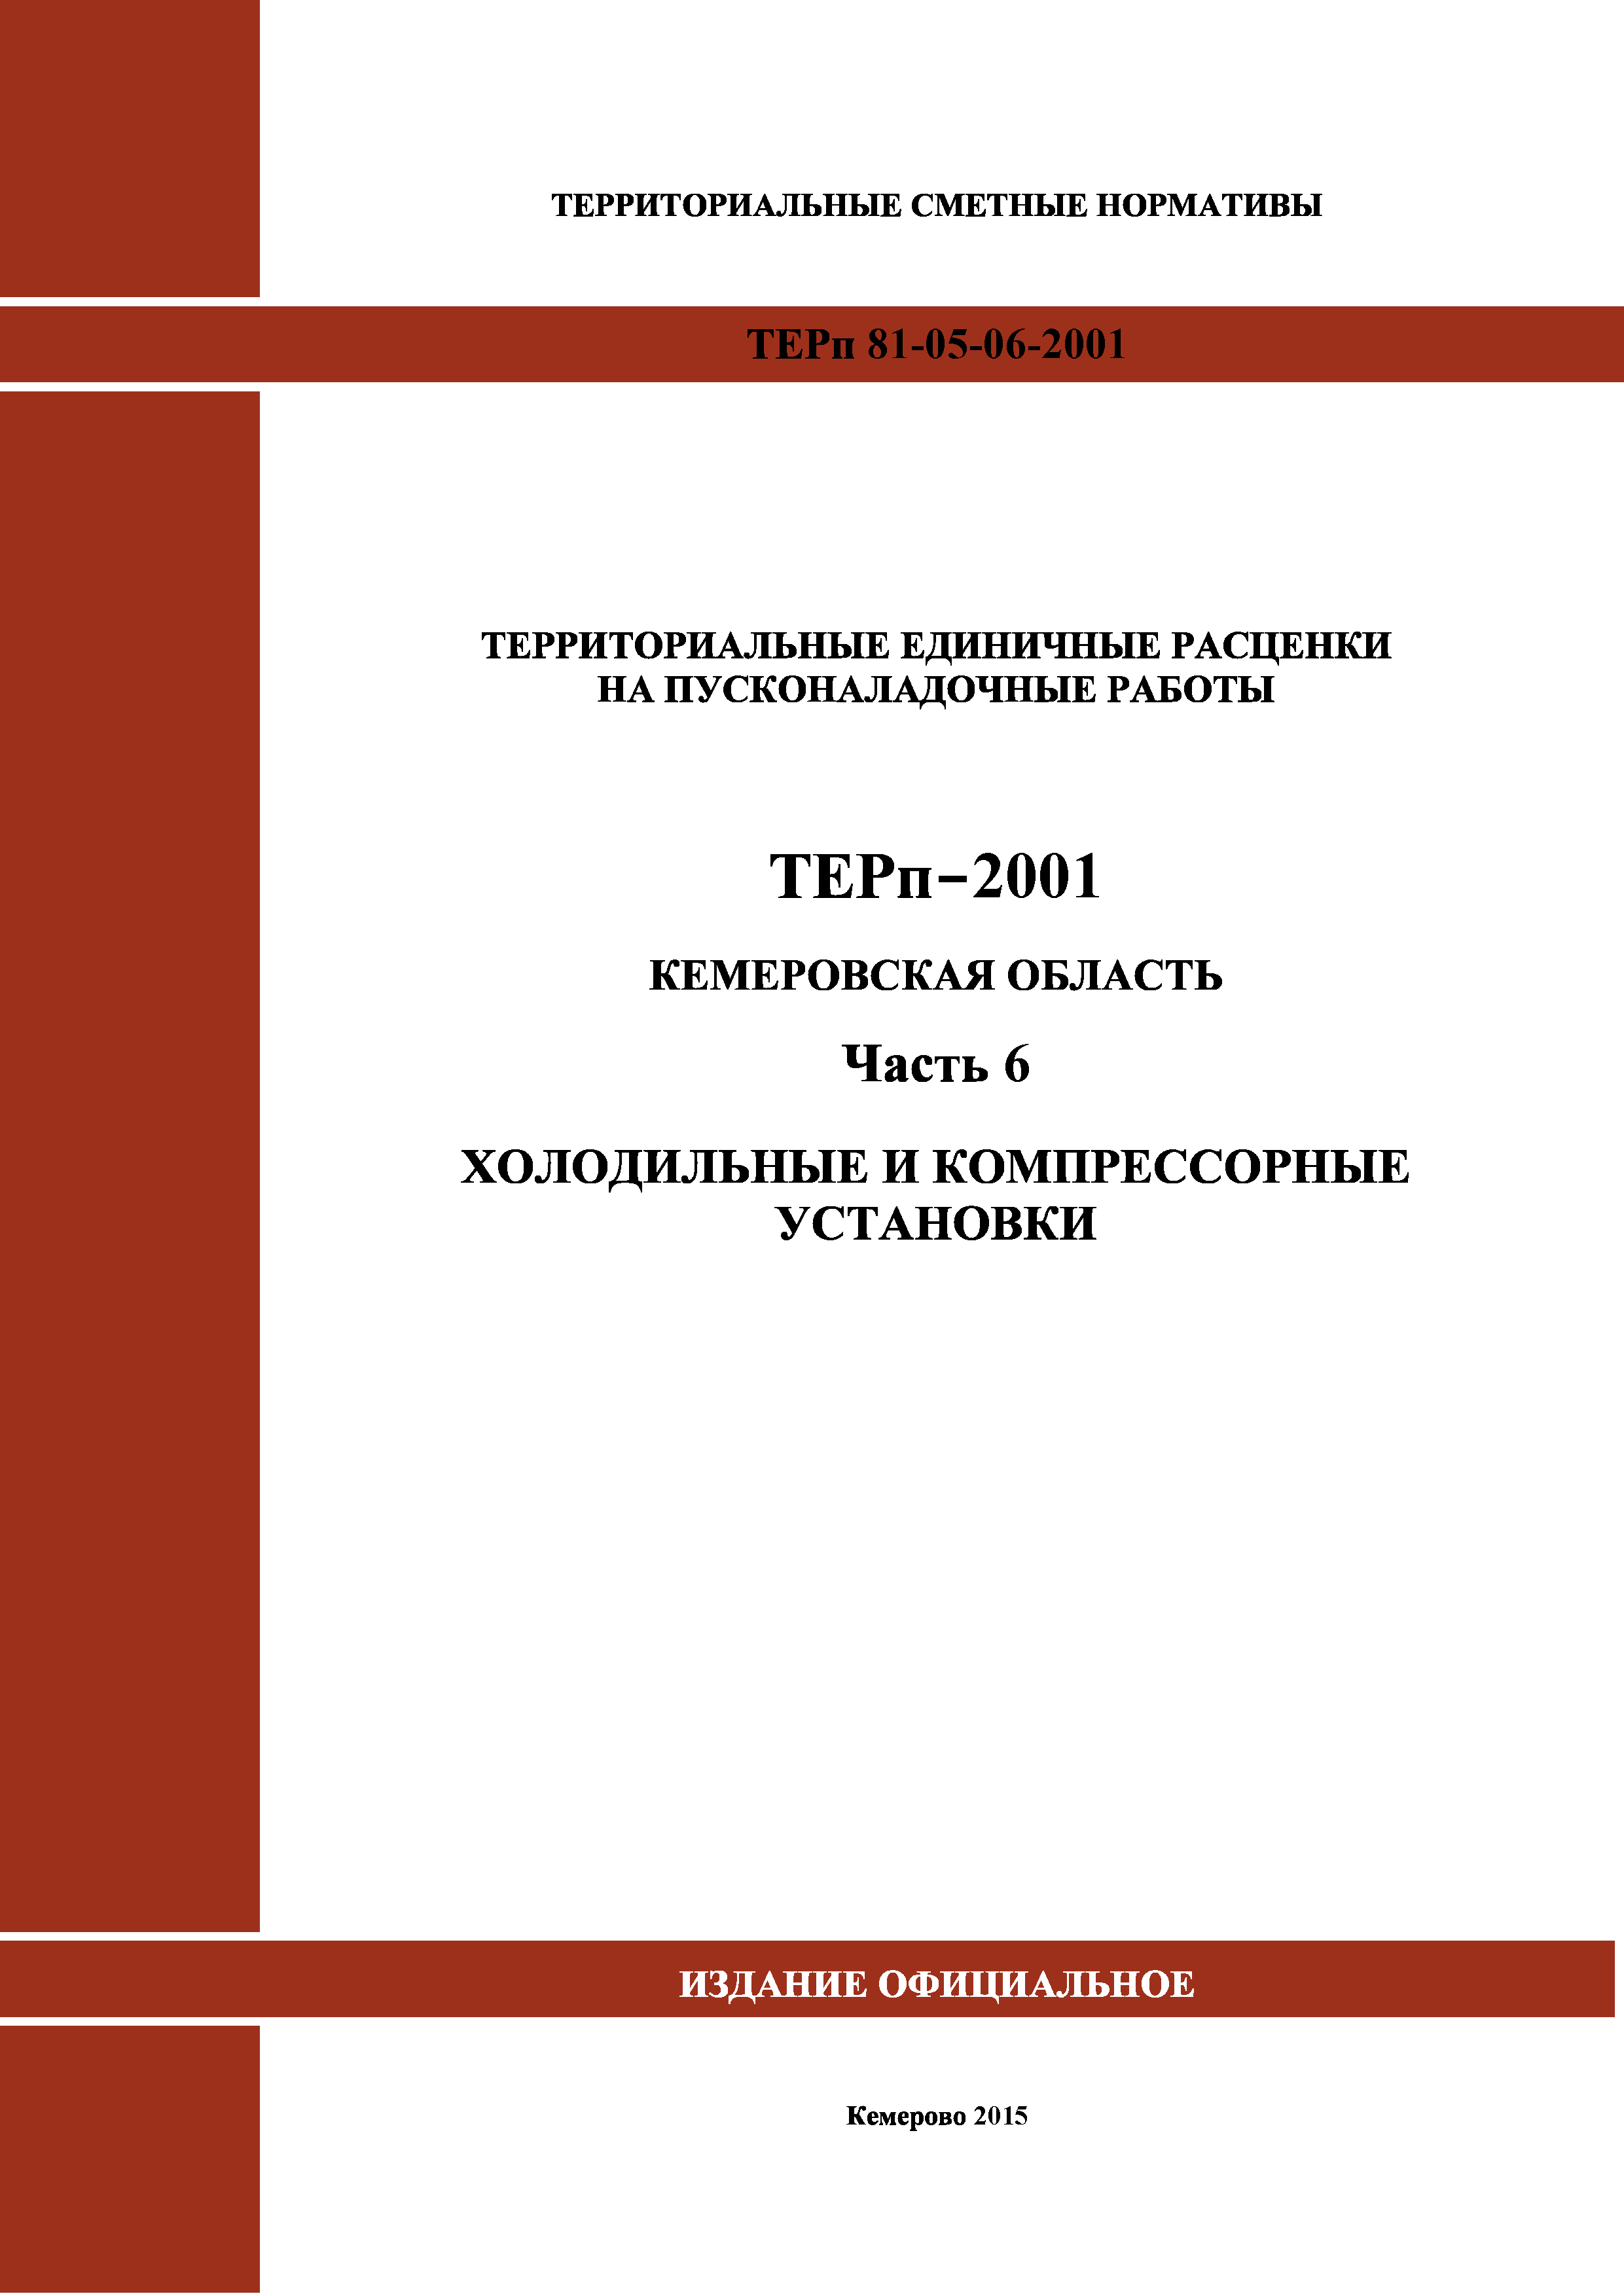 ТЕРп Кемеровская область 81-05-06-2001